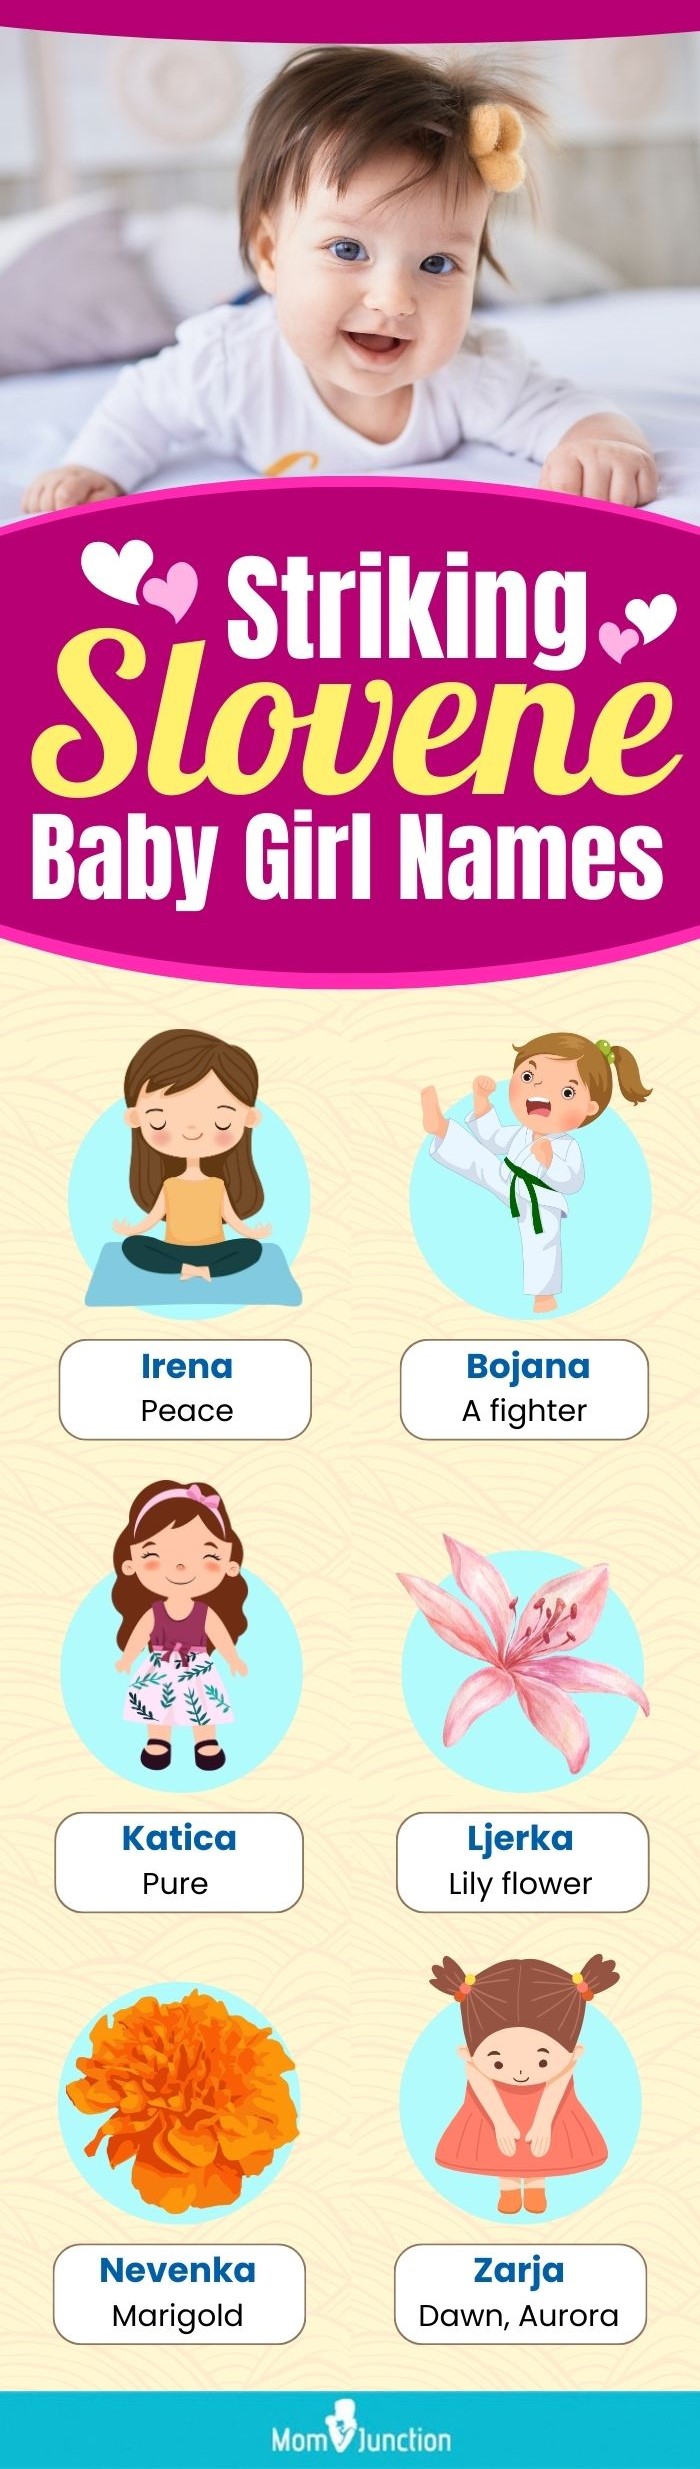 striking slovene baby girl names (infographic)